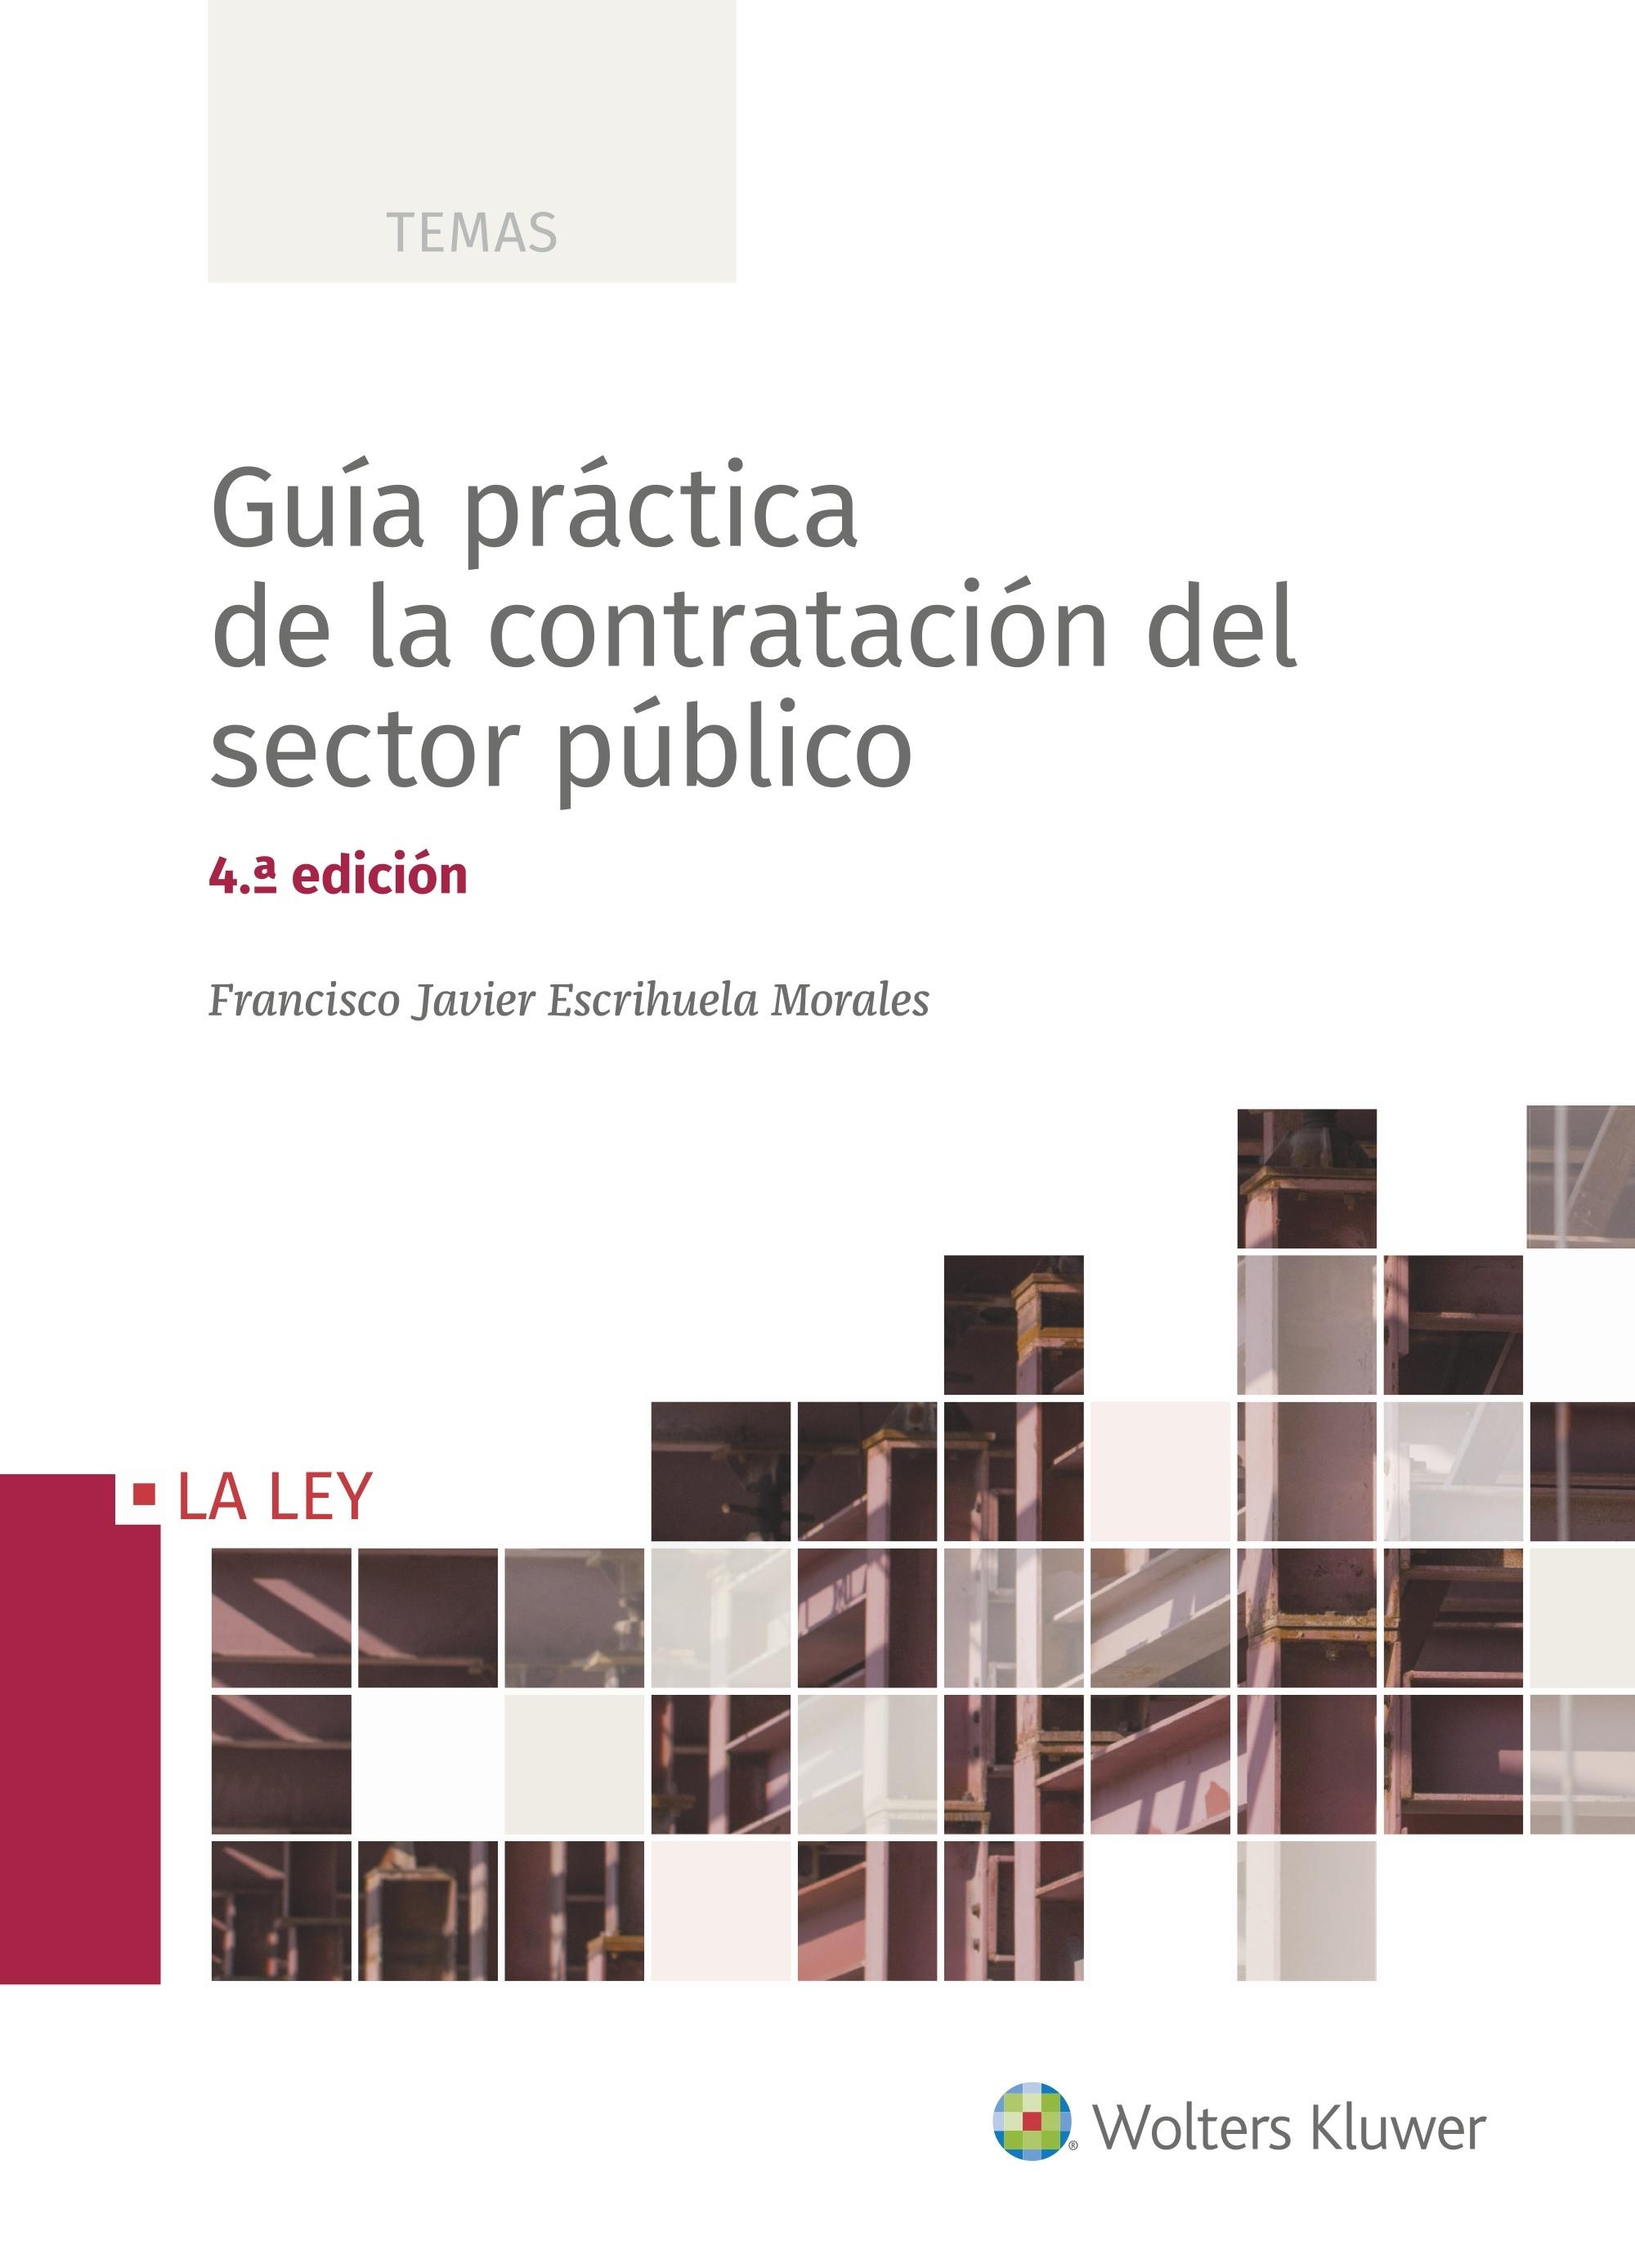 GUIA PRACTICA DE LA CONTRAATACION DEL SECTOR PUBLICO. 4ª EDICION. 